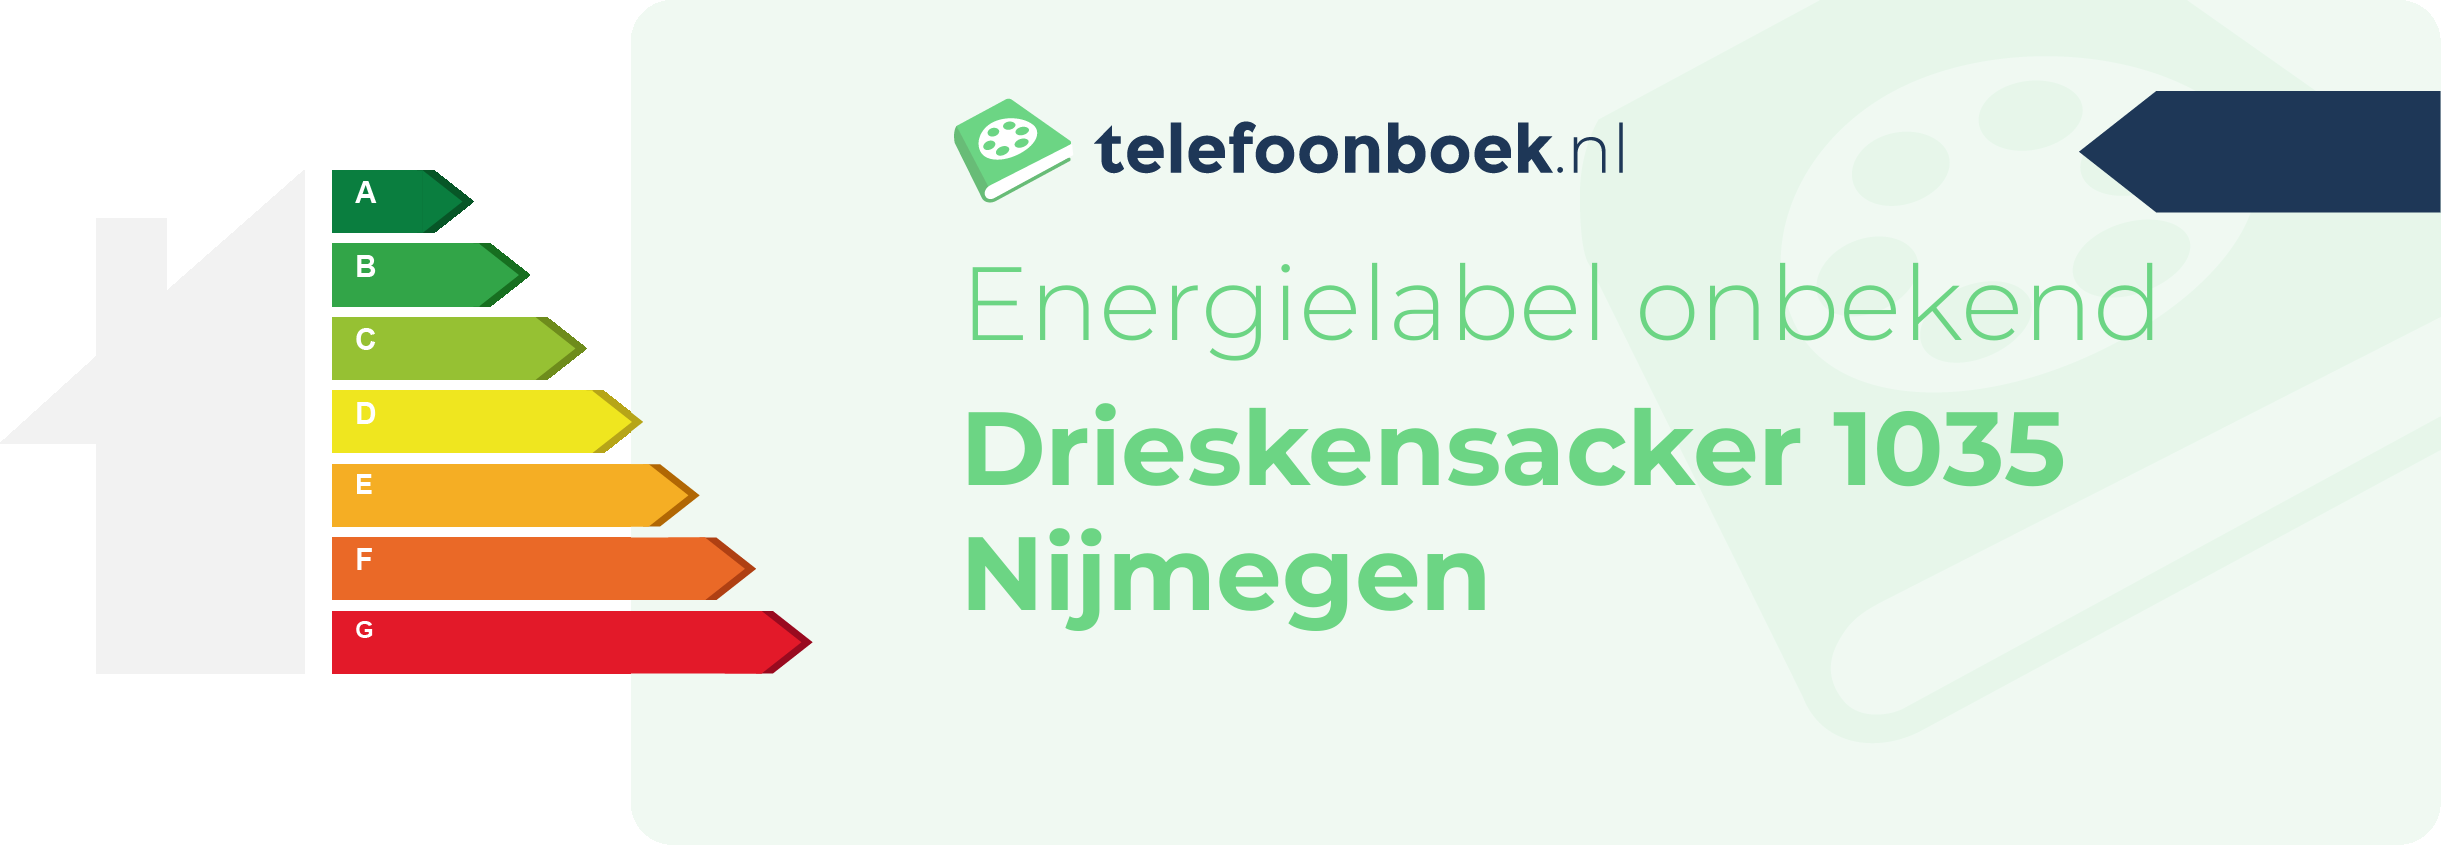 Energielabel Drieskensacker 1035 Nijmegen